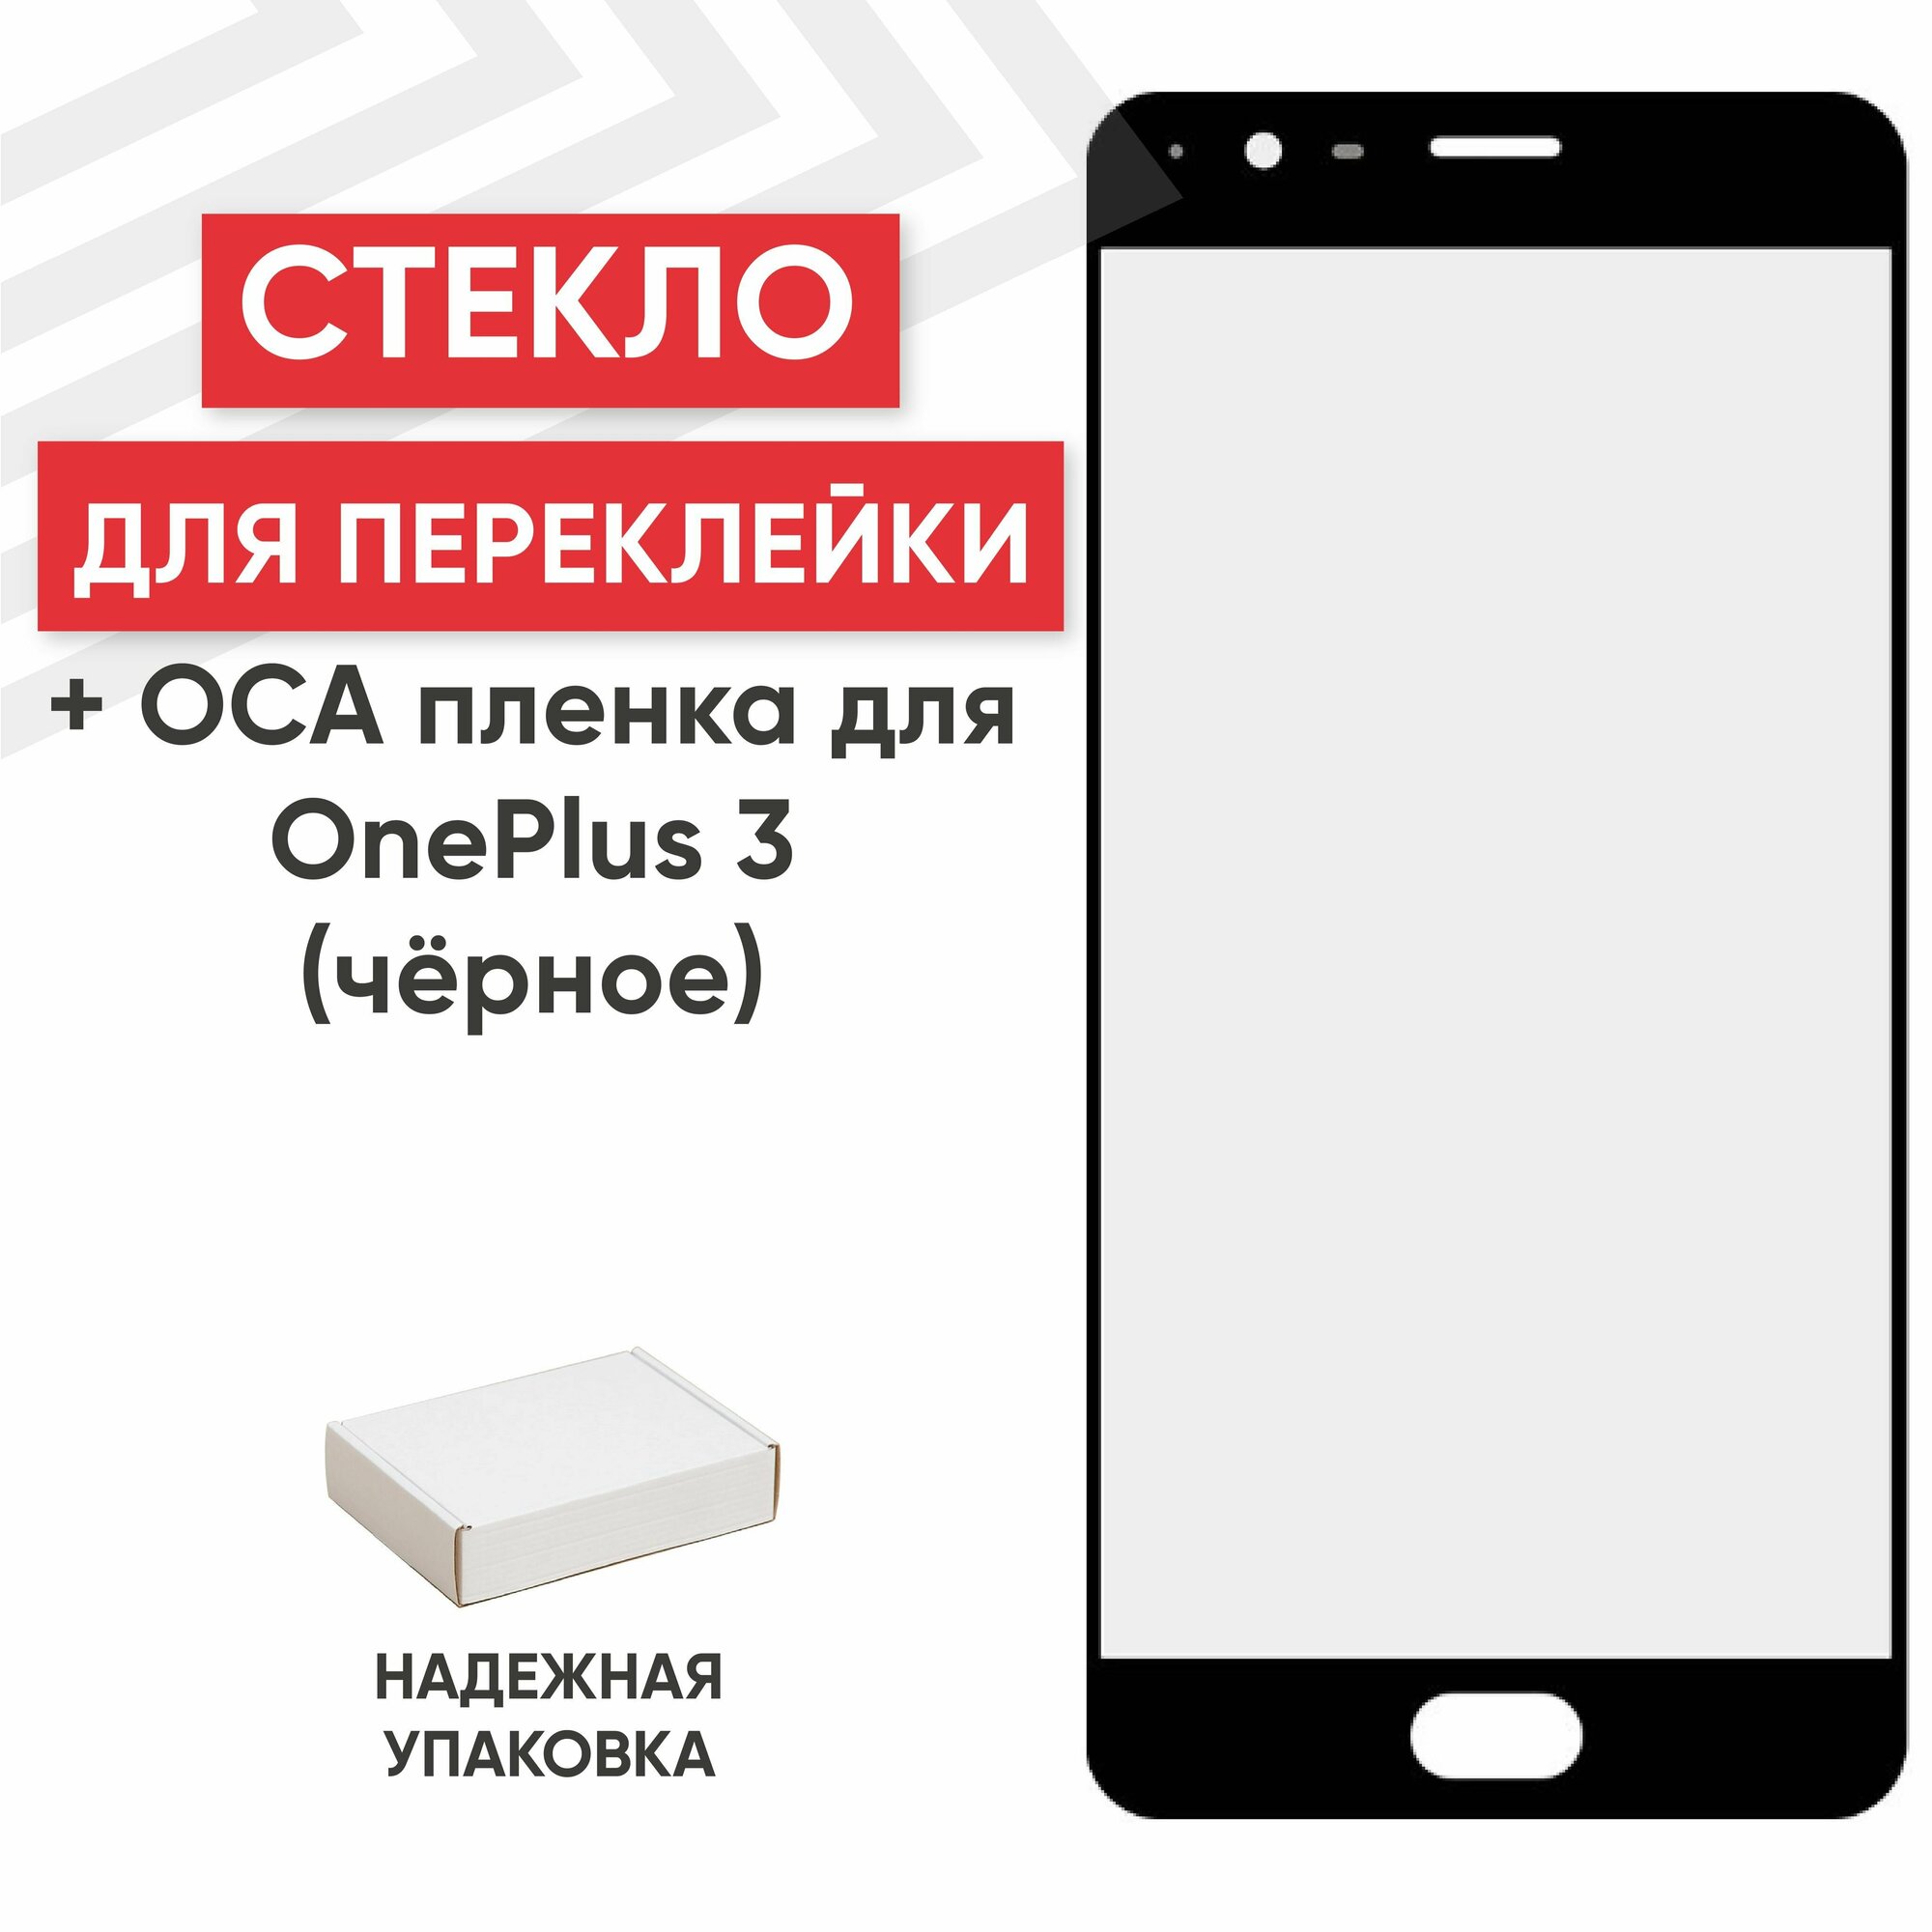 Стекло переклейки дисплея c OCA пленкой для мобильного телефона (смартфона) OnePlus 3, черное